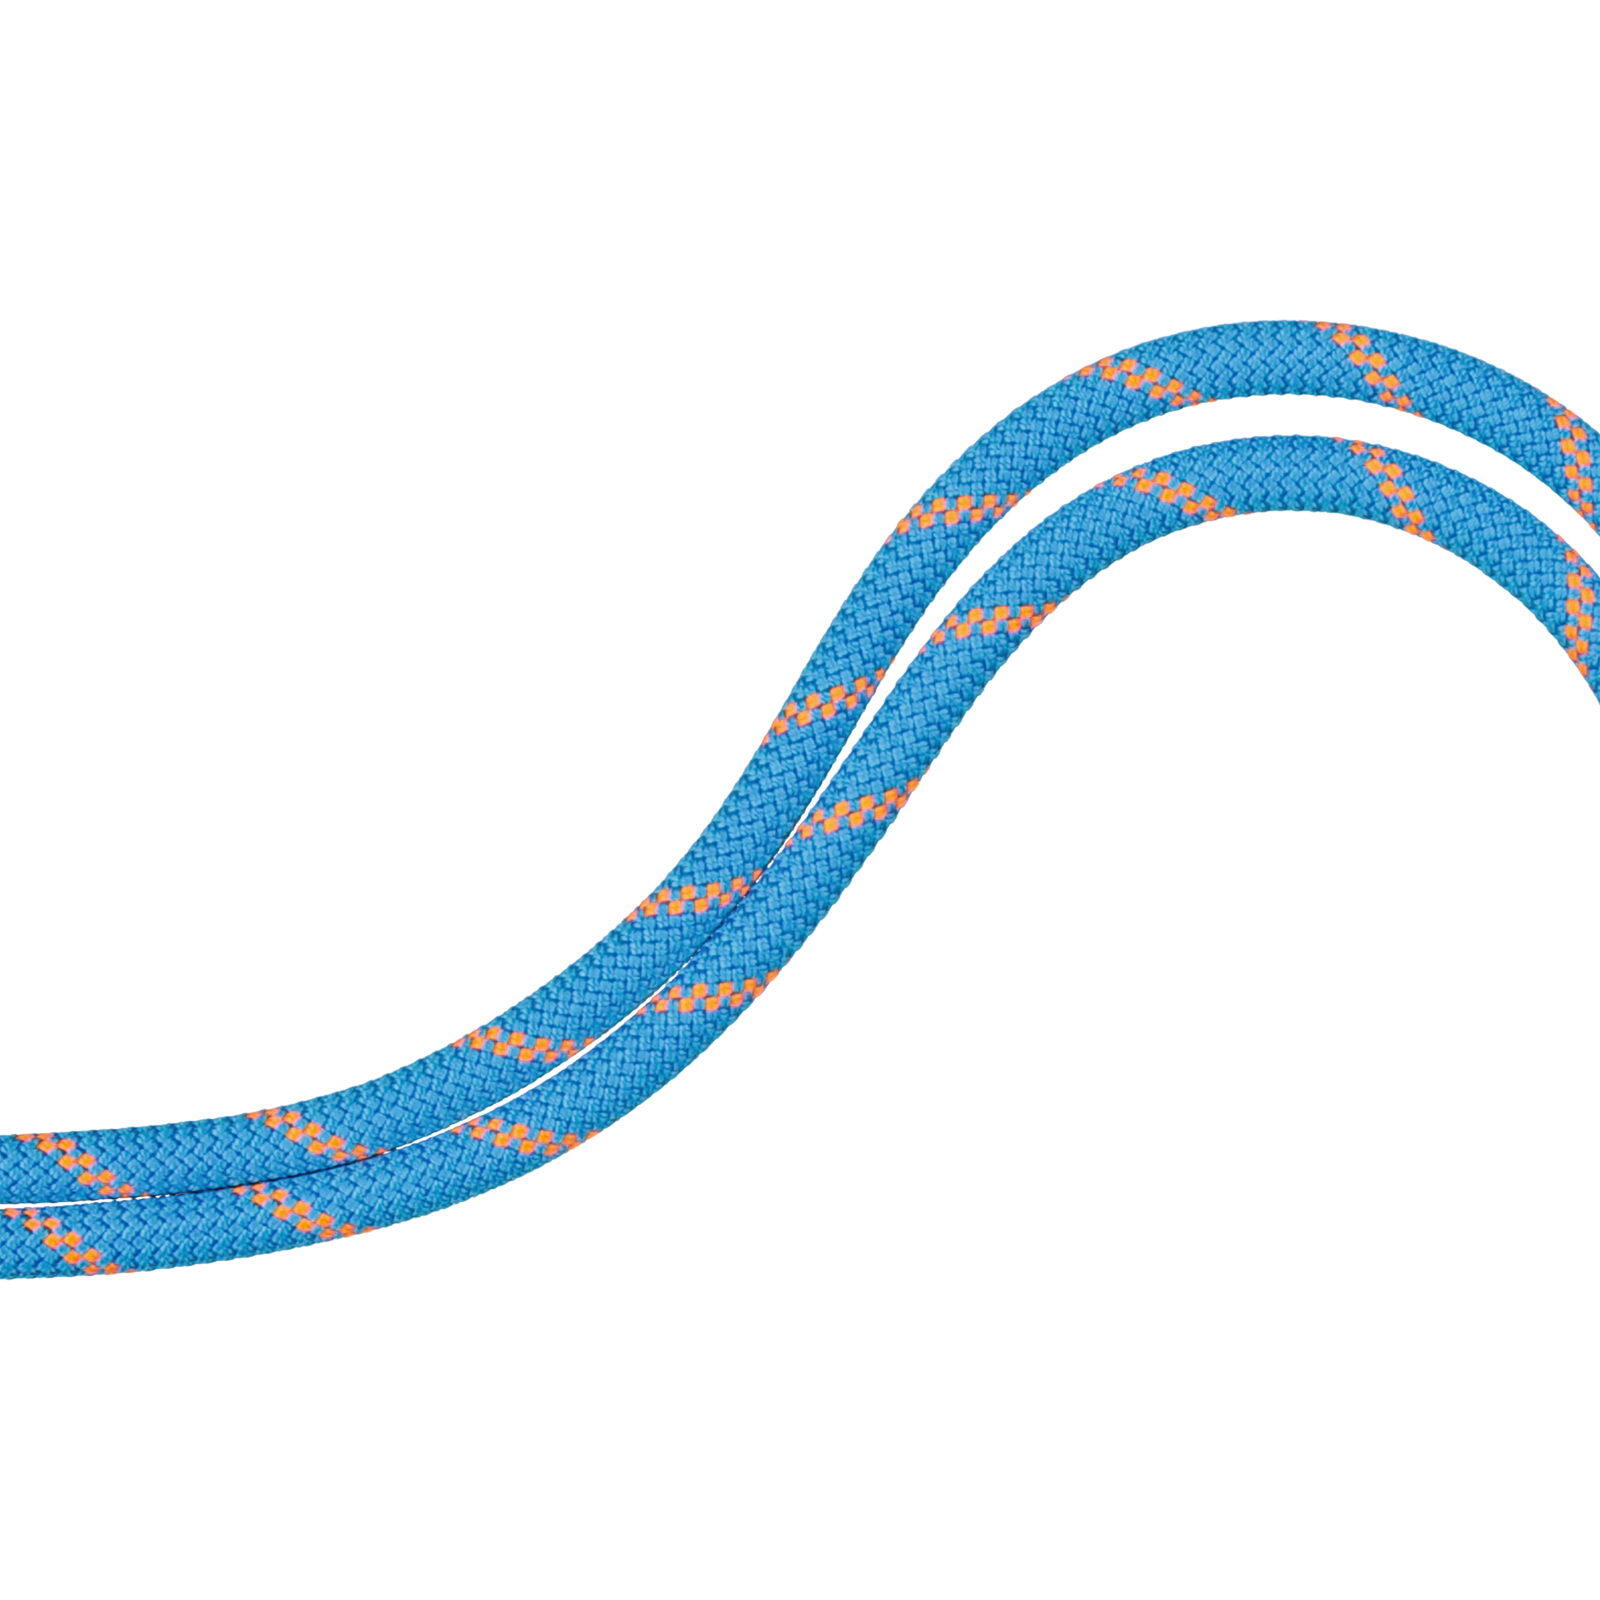 Alpine Sender Dry Triple-Rated Rope 8.7 mm x 60m - Orange 6/7